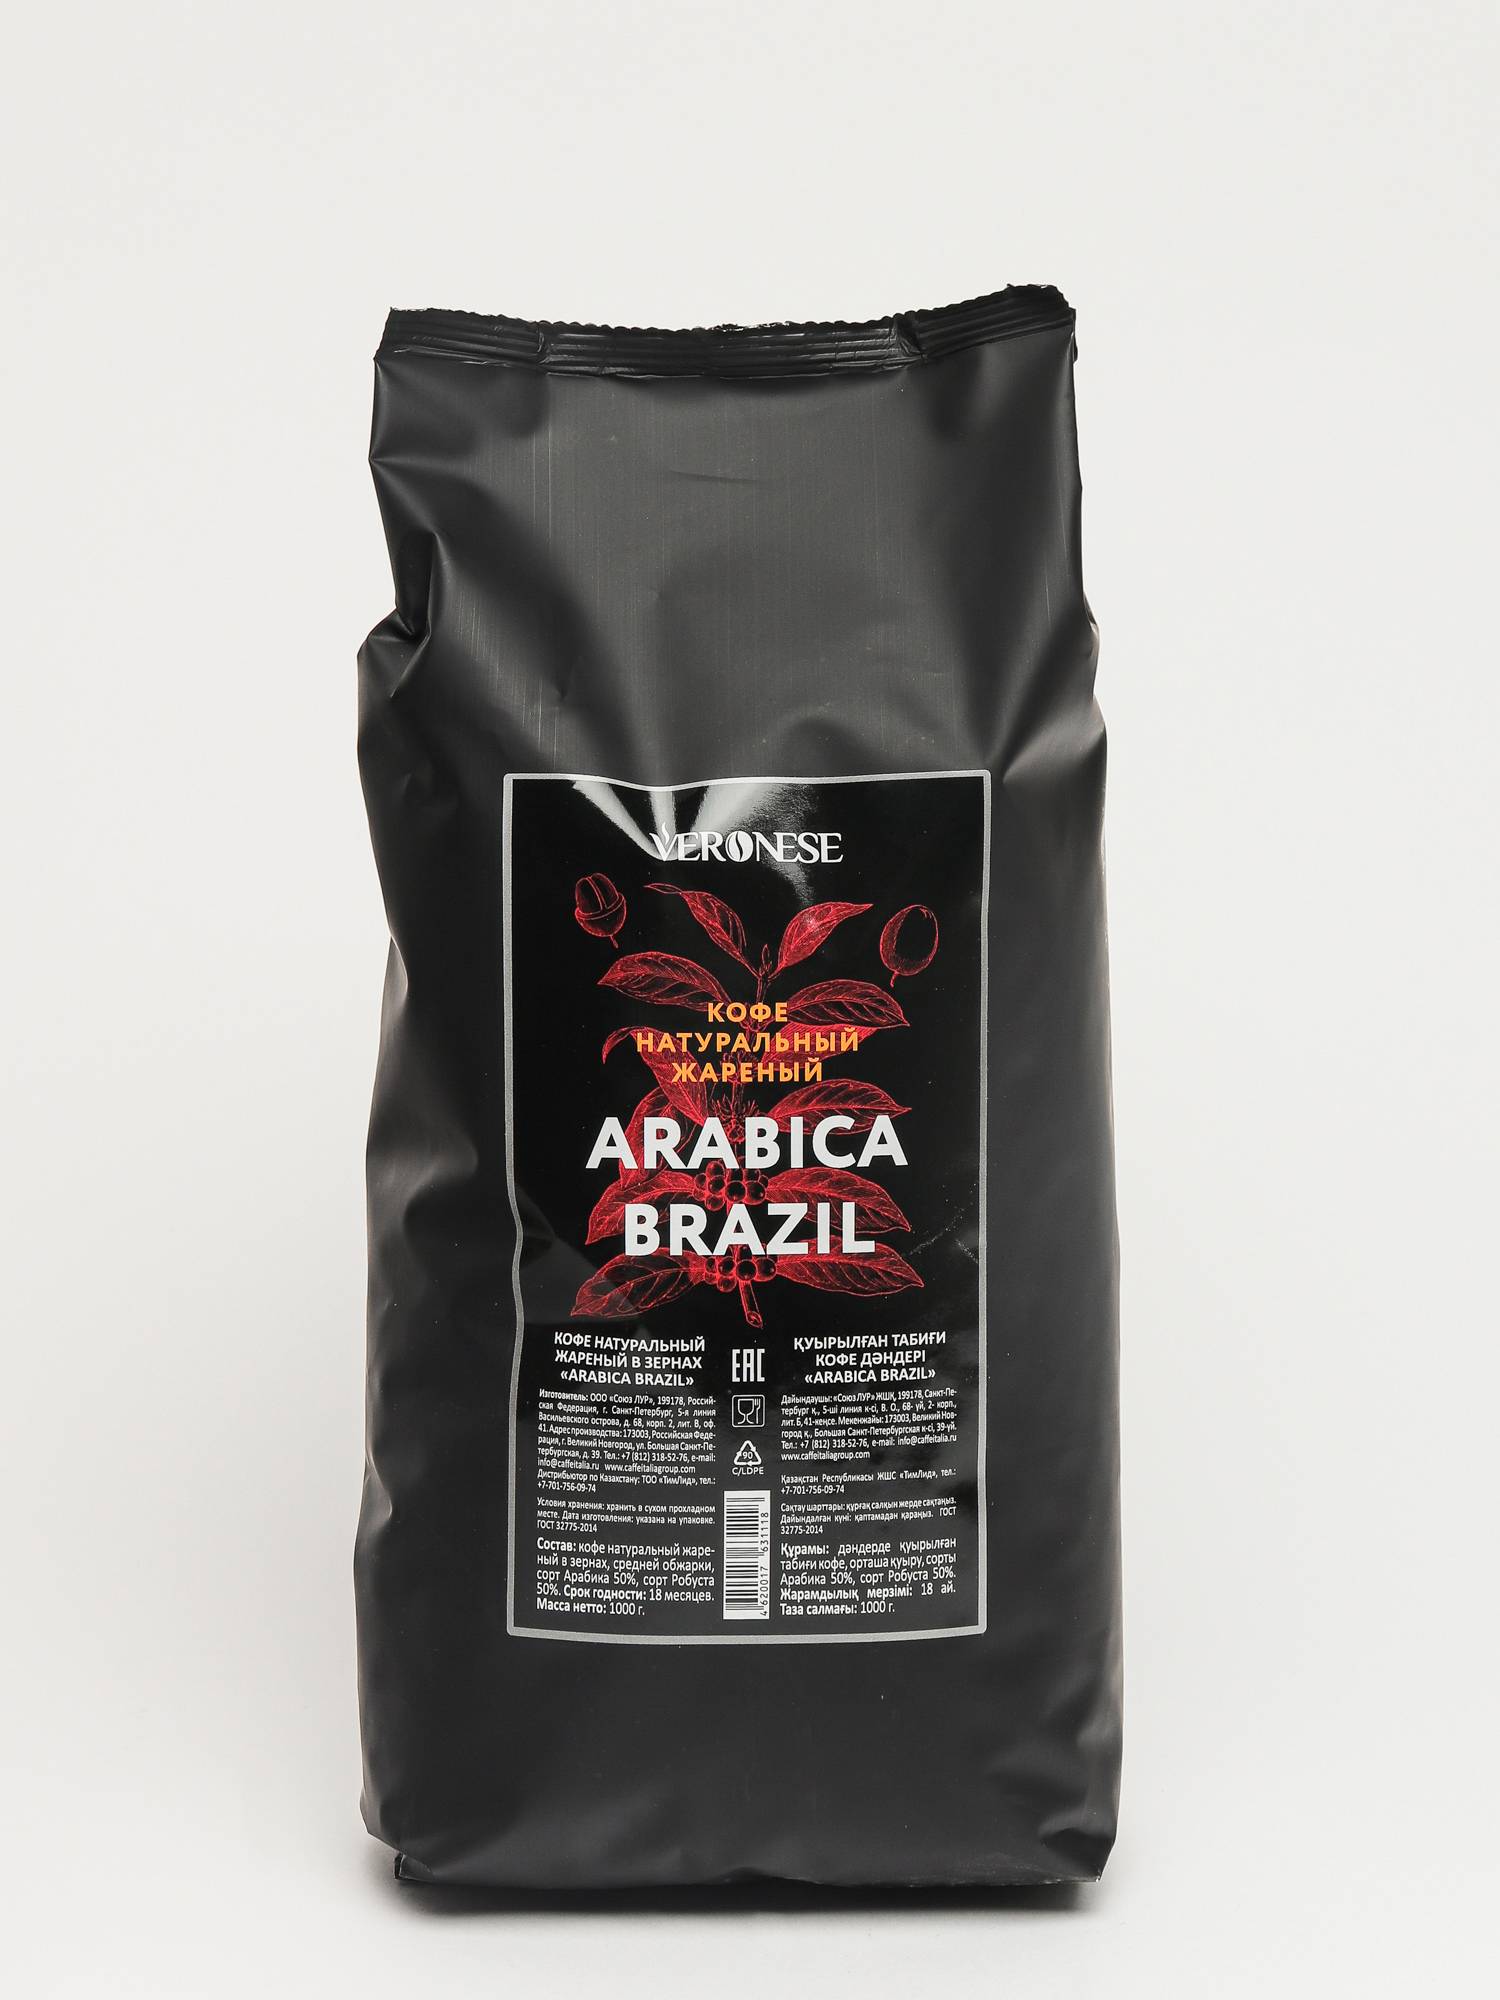 Купить зерновой кофе для кофемашины недорого. Кофе в зернах Veronese Arabica. Кофе в зернах Veronese Brazil. Молотый кофе Арабика Робуста. Кофе молотый Veronese Arabica.